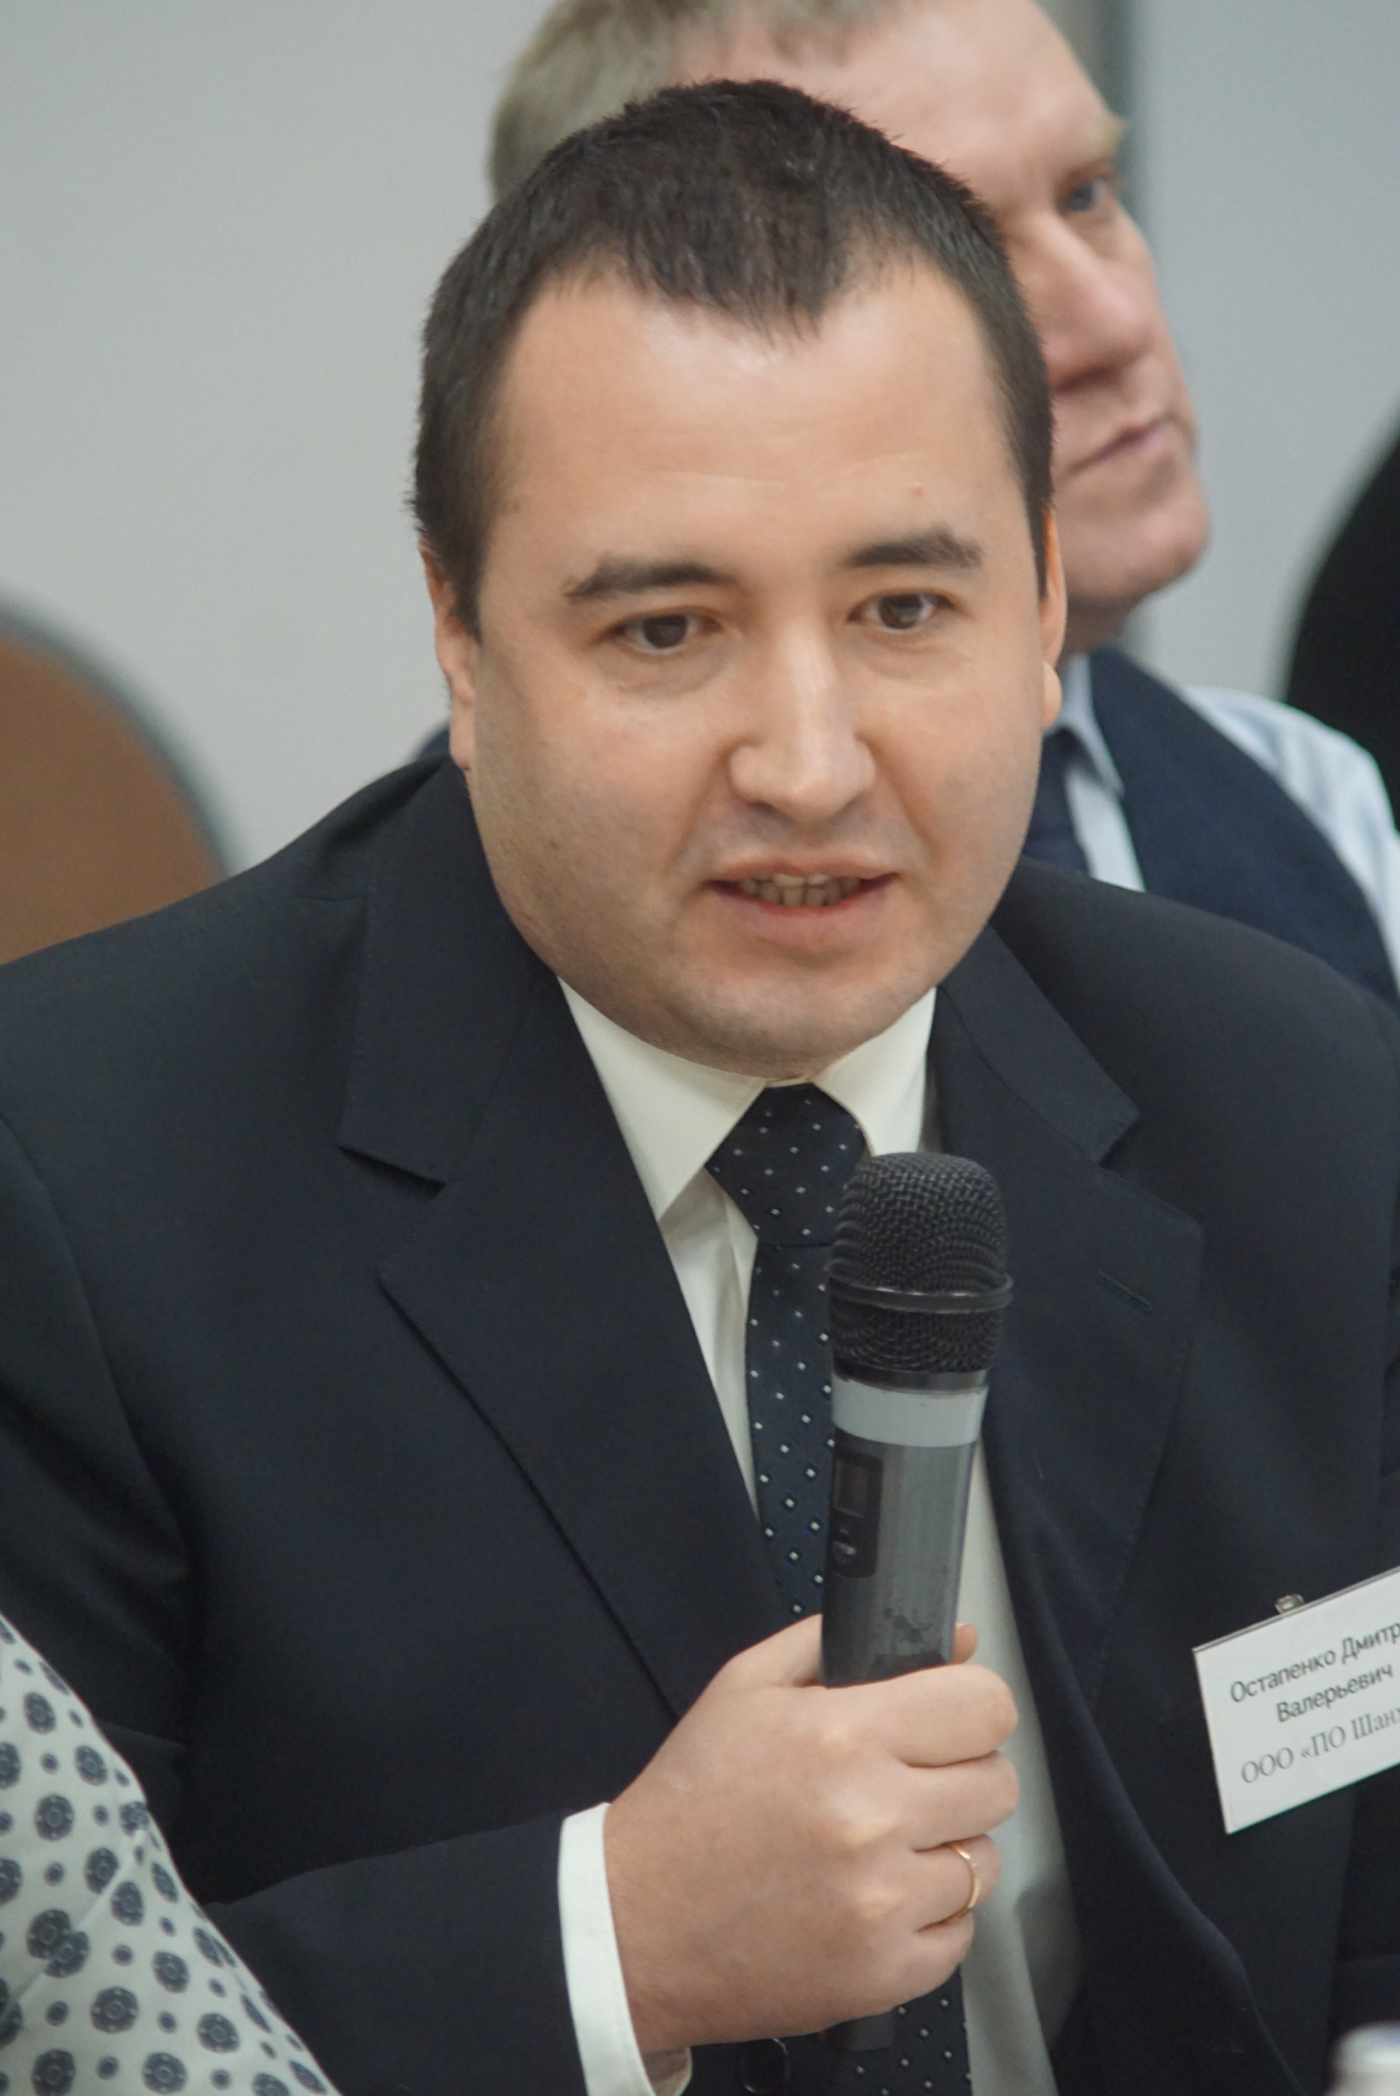 Остапенко Дмитрий Валерьевич — финансовый директор ООО «ПО Шанхай»